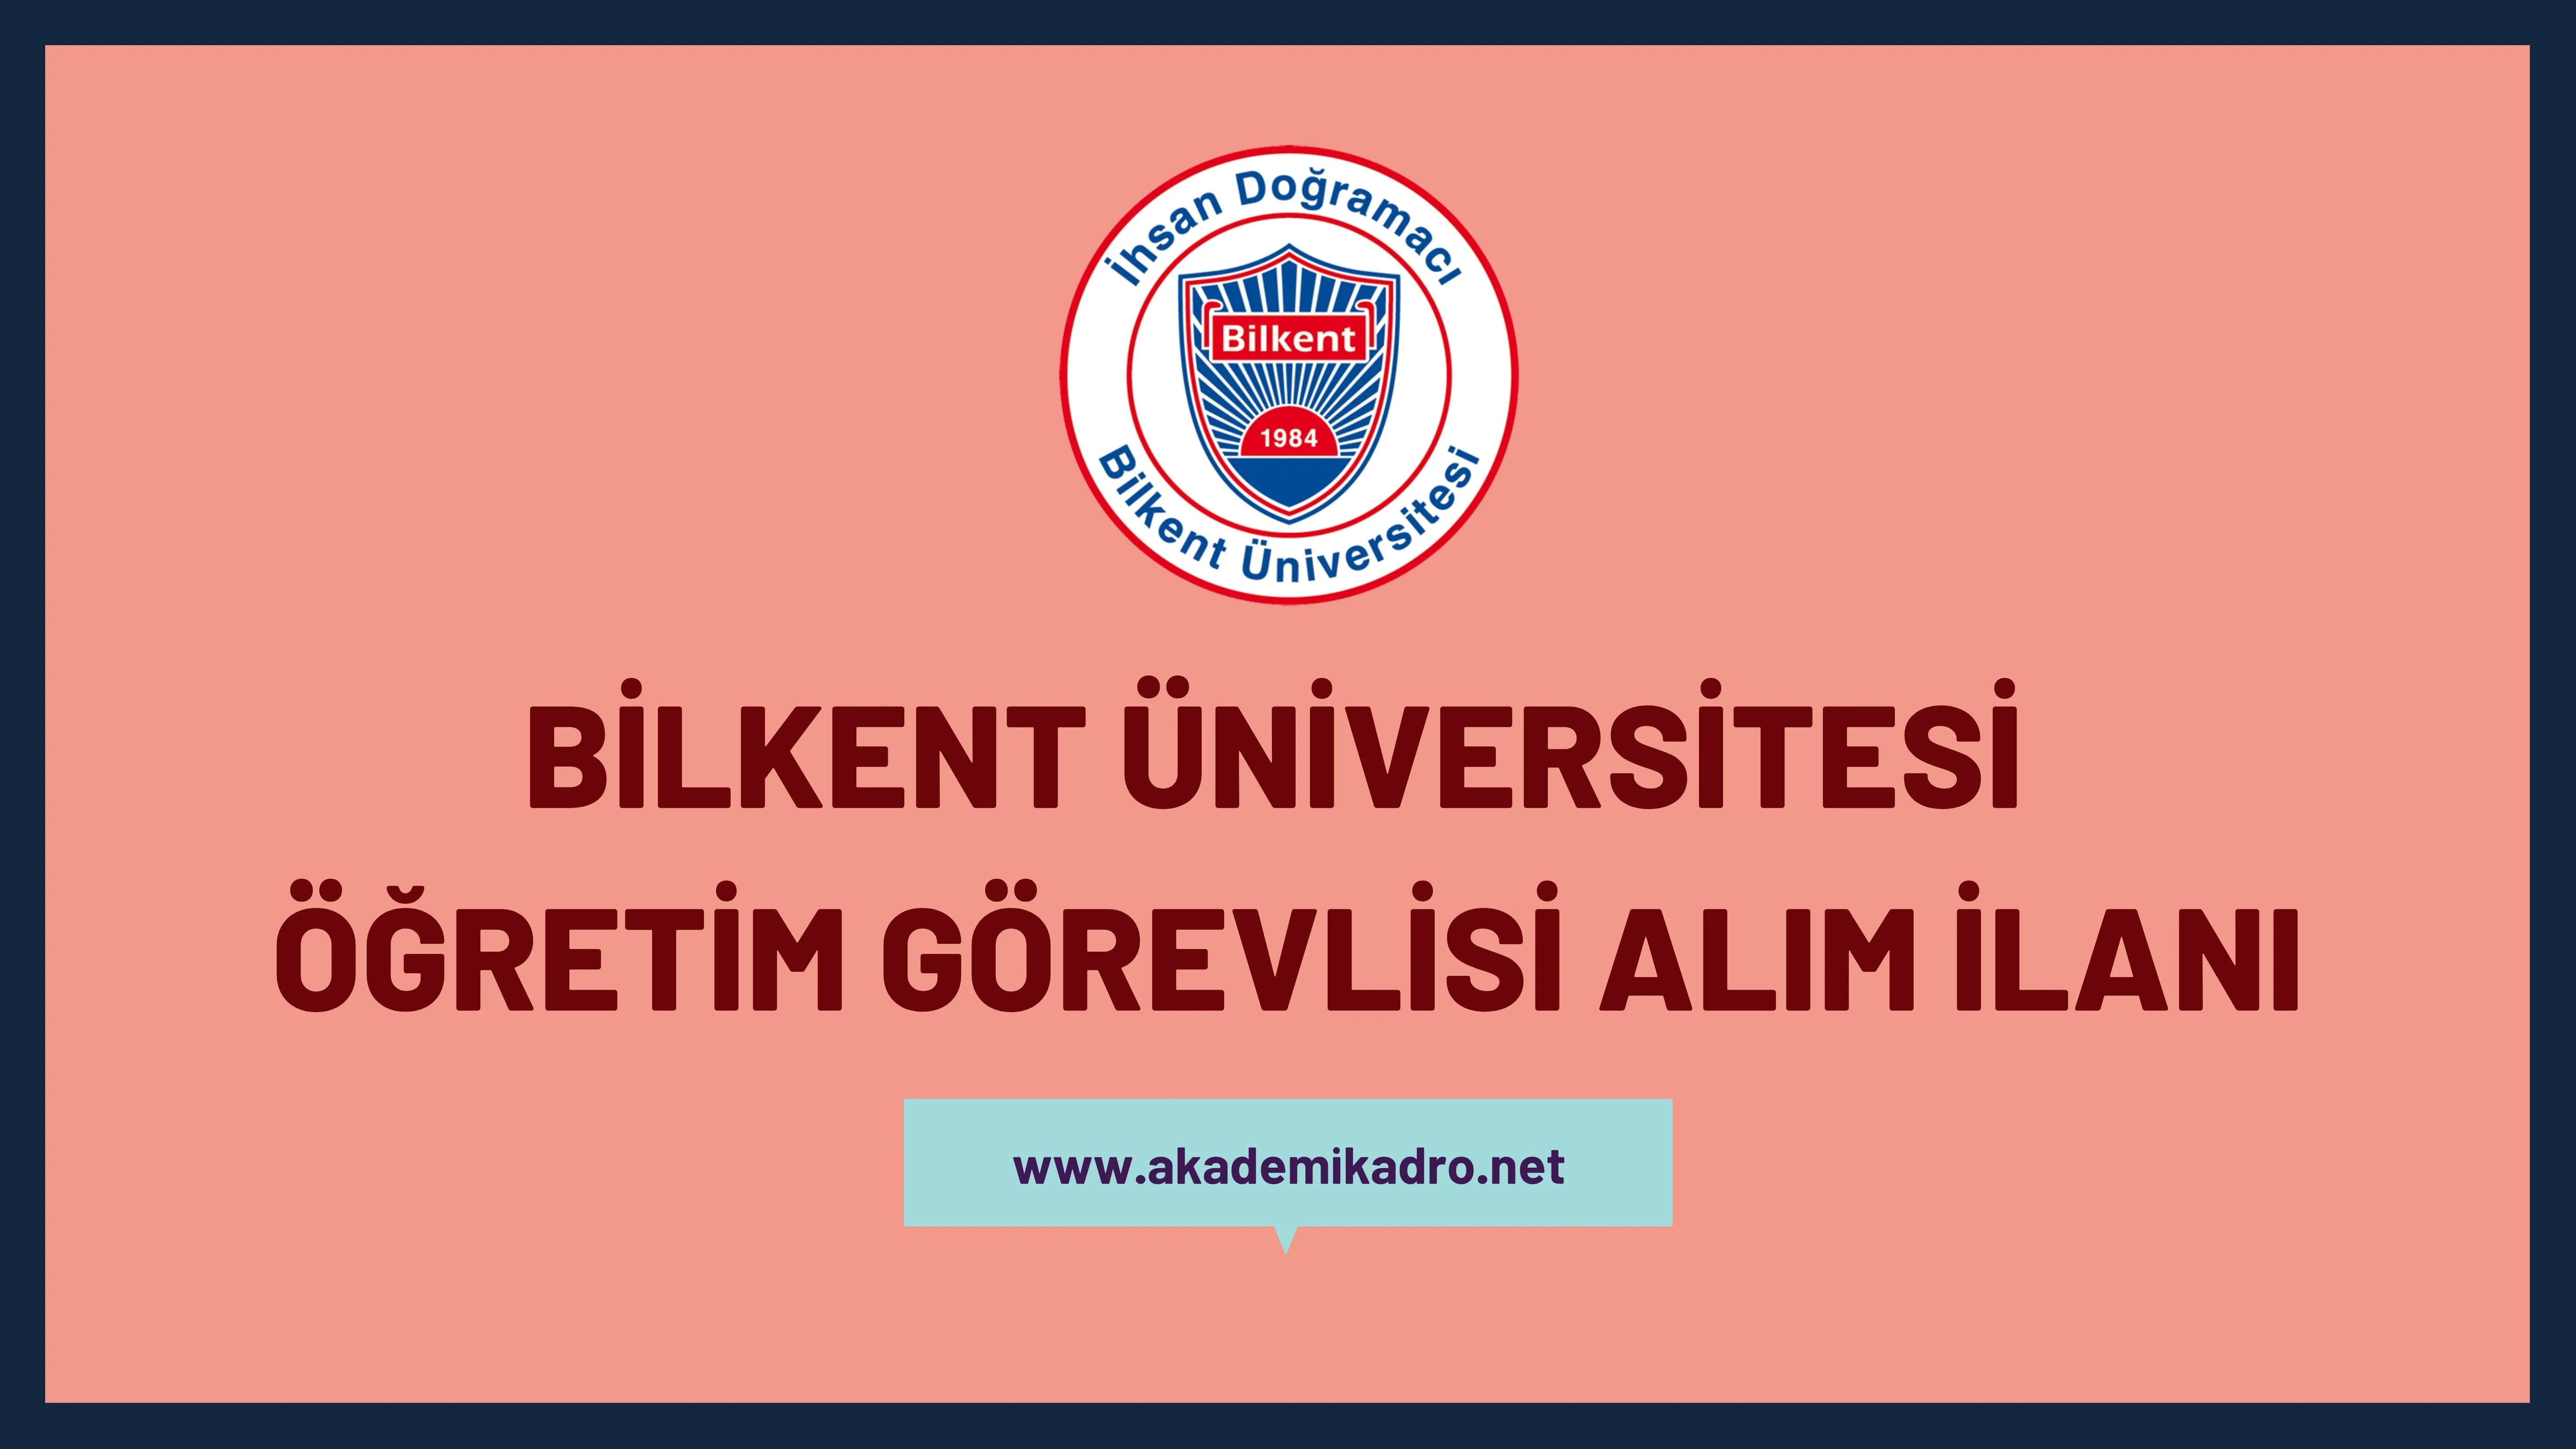 İhsan Doğramacı Bilkent Üniversitesi Öğretim görevlisi alacak. Son başvuru tarihi 29.06.2023.